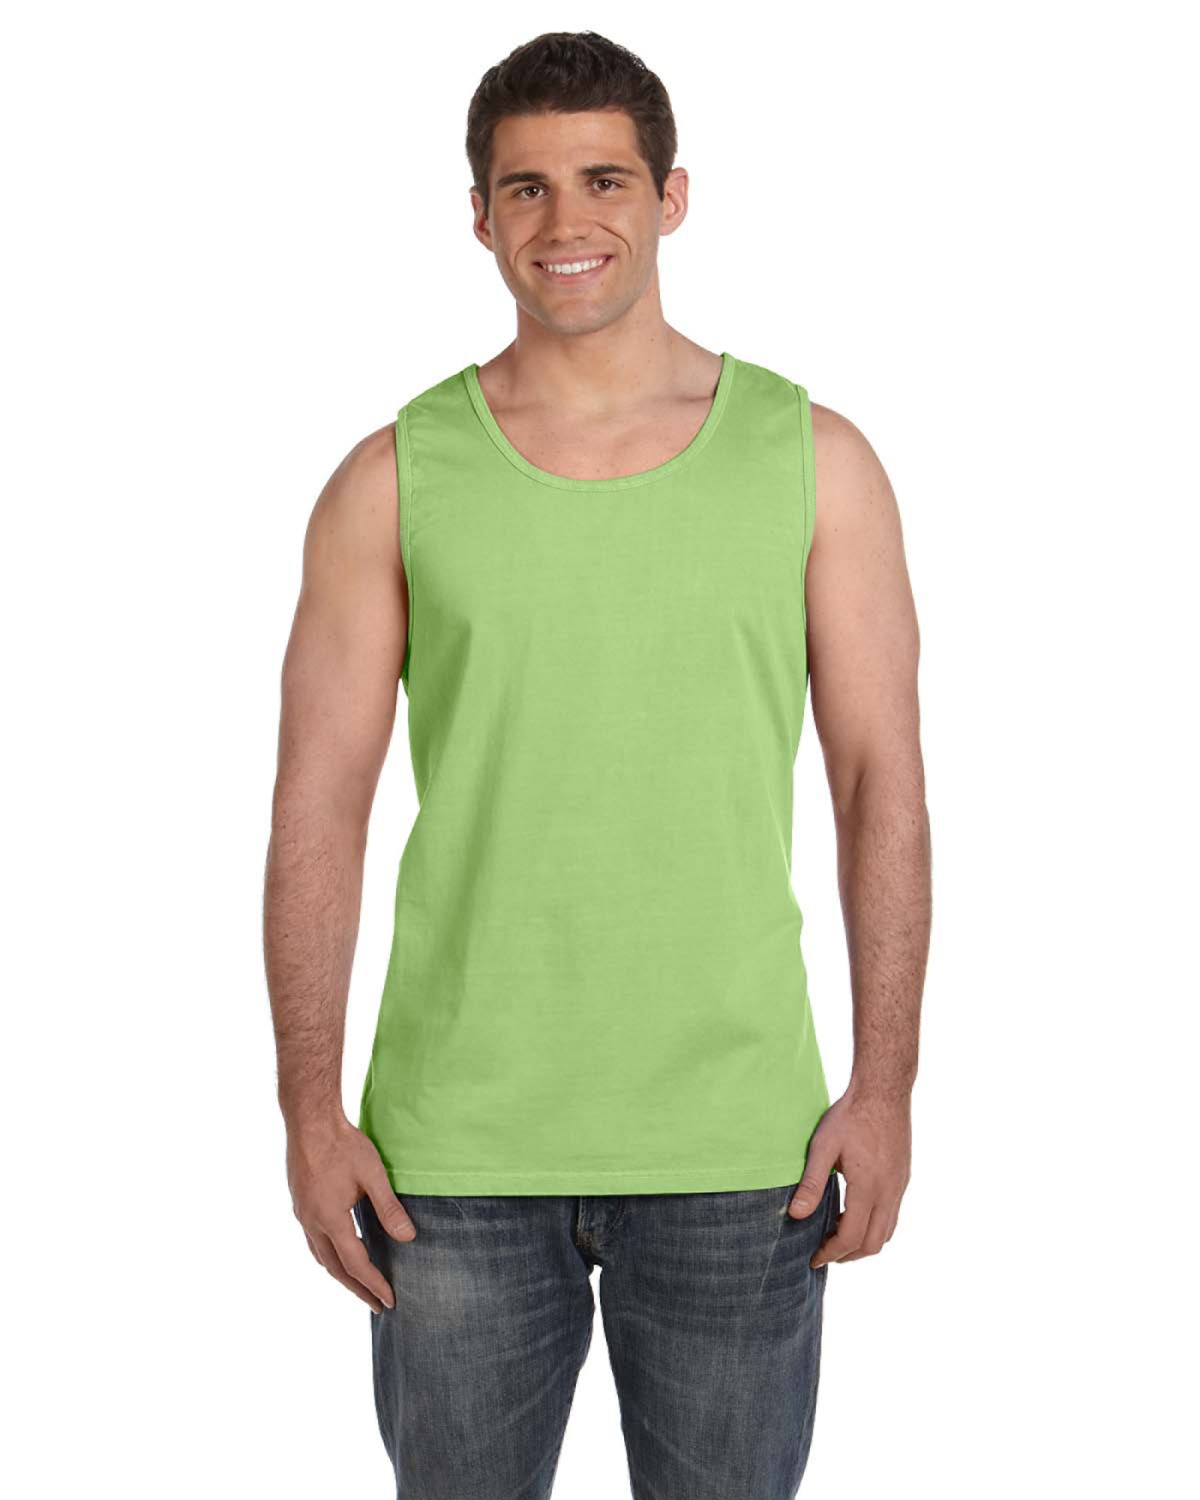 Chouinard Adult Garment-Dyed Tank Top